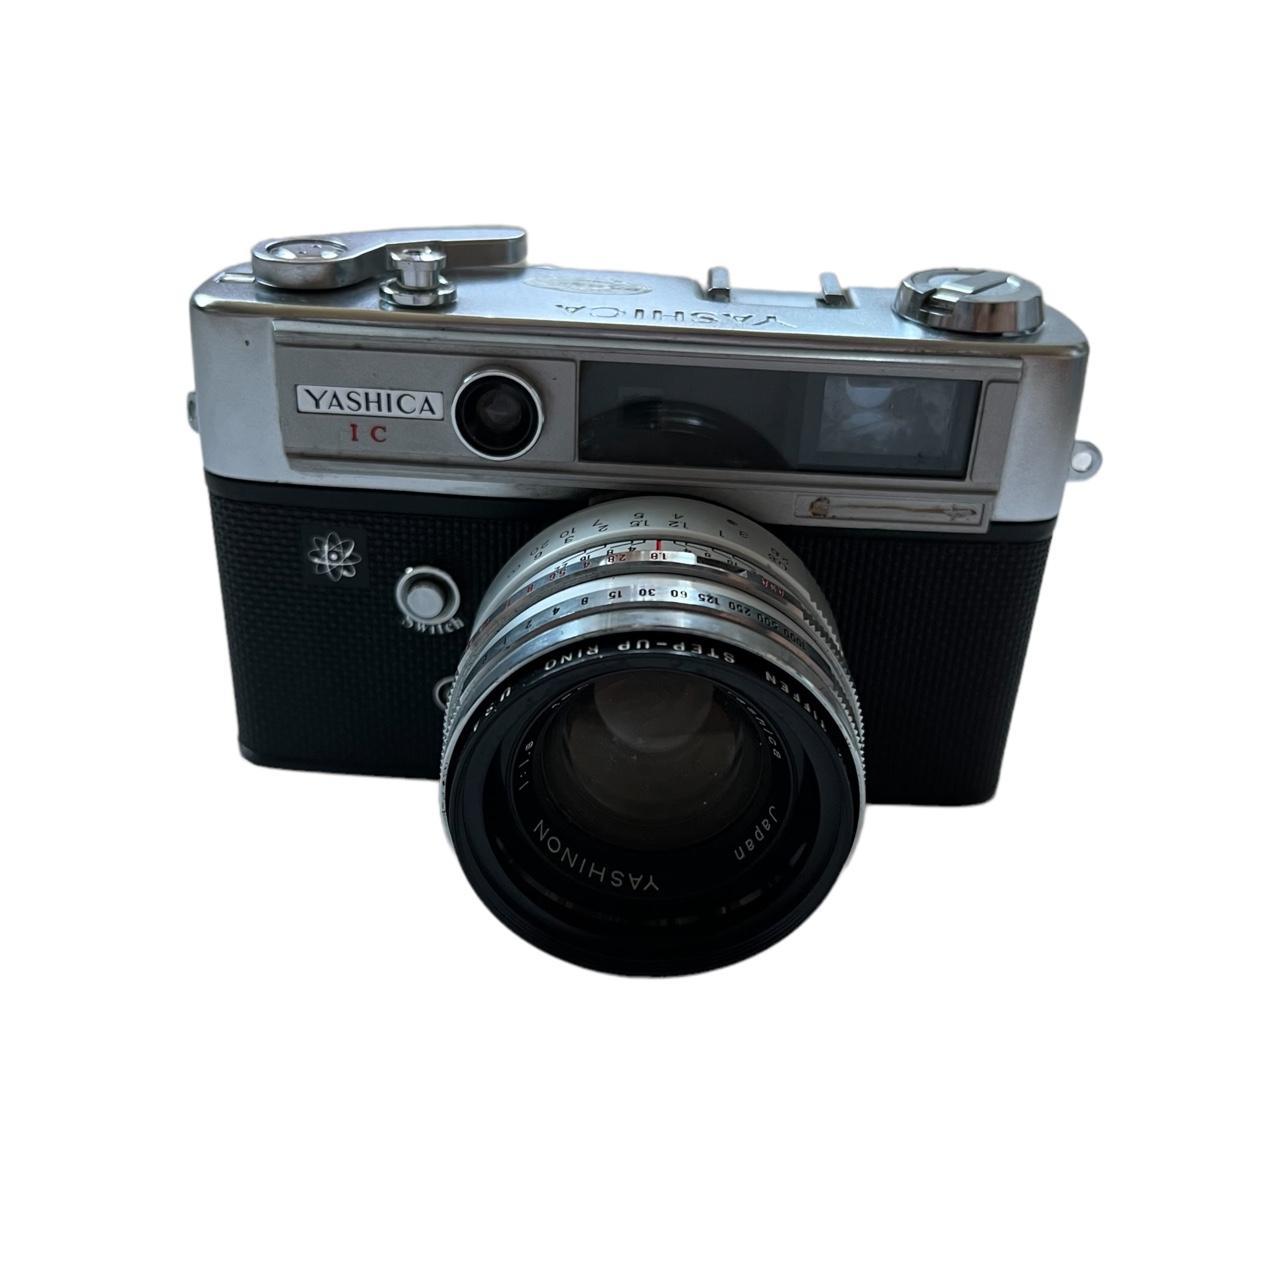 Product Image 2 - Yashica Lynx 5000E

~range finder camera